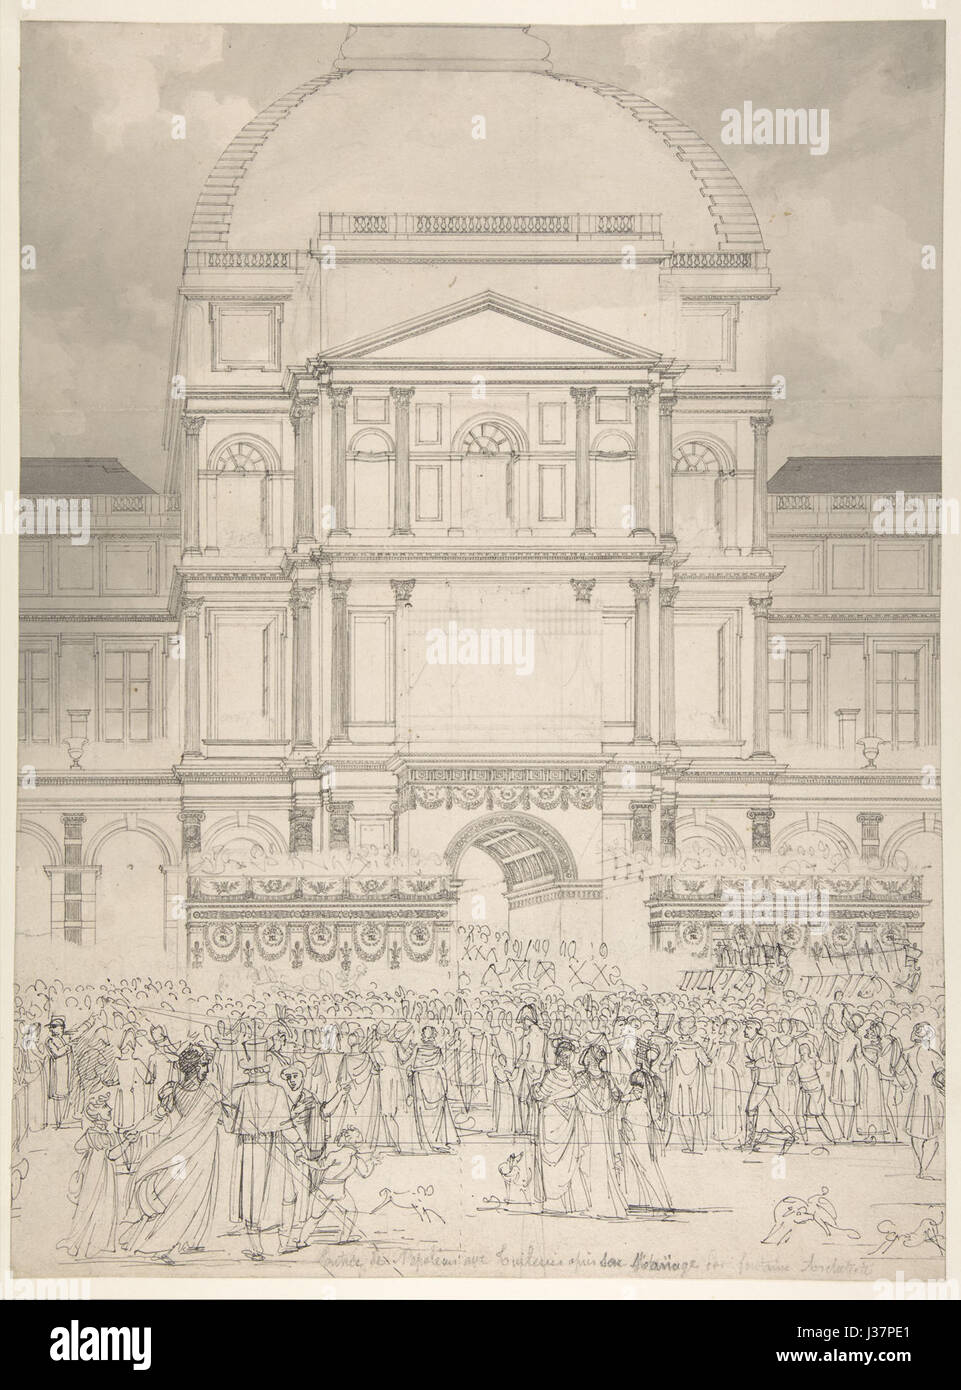 Charles Percier, foule en face de l'palais des Tuileries pendant le mariage de Napoléon à Marie Louise d'Autriche Banque D'Images